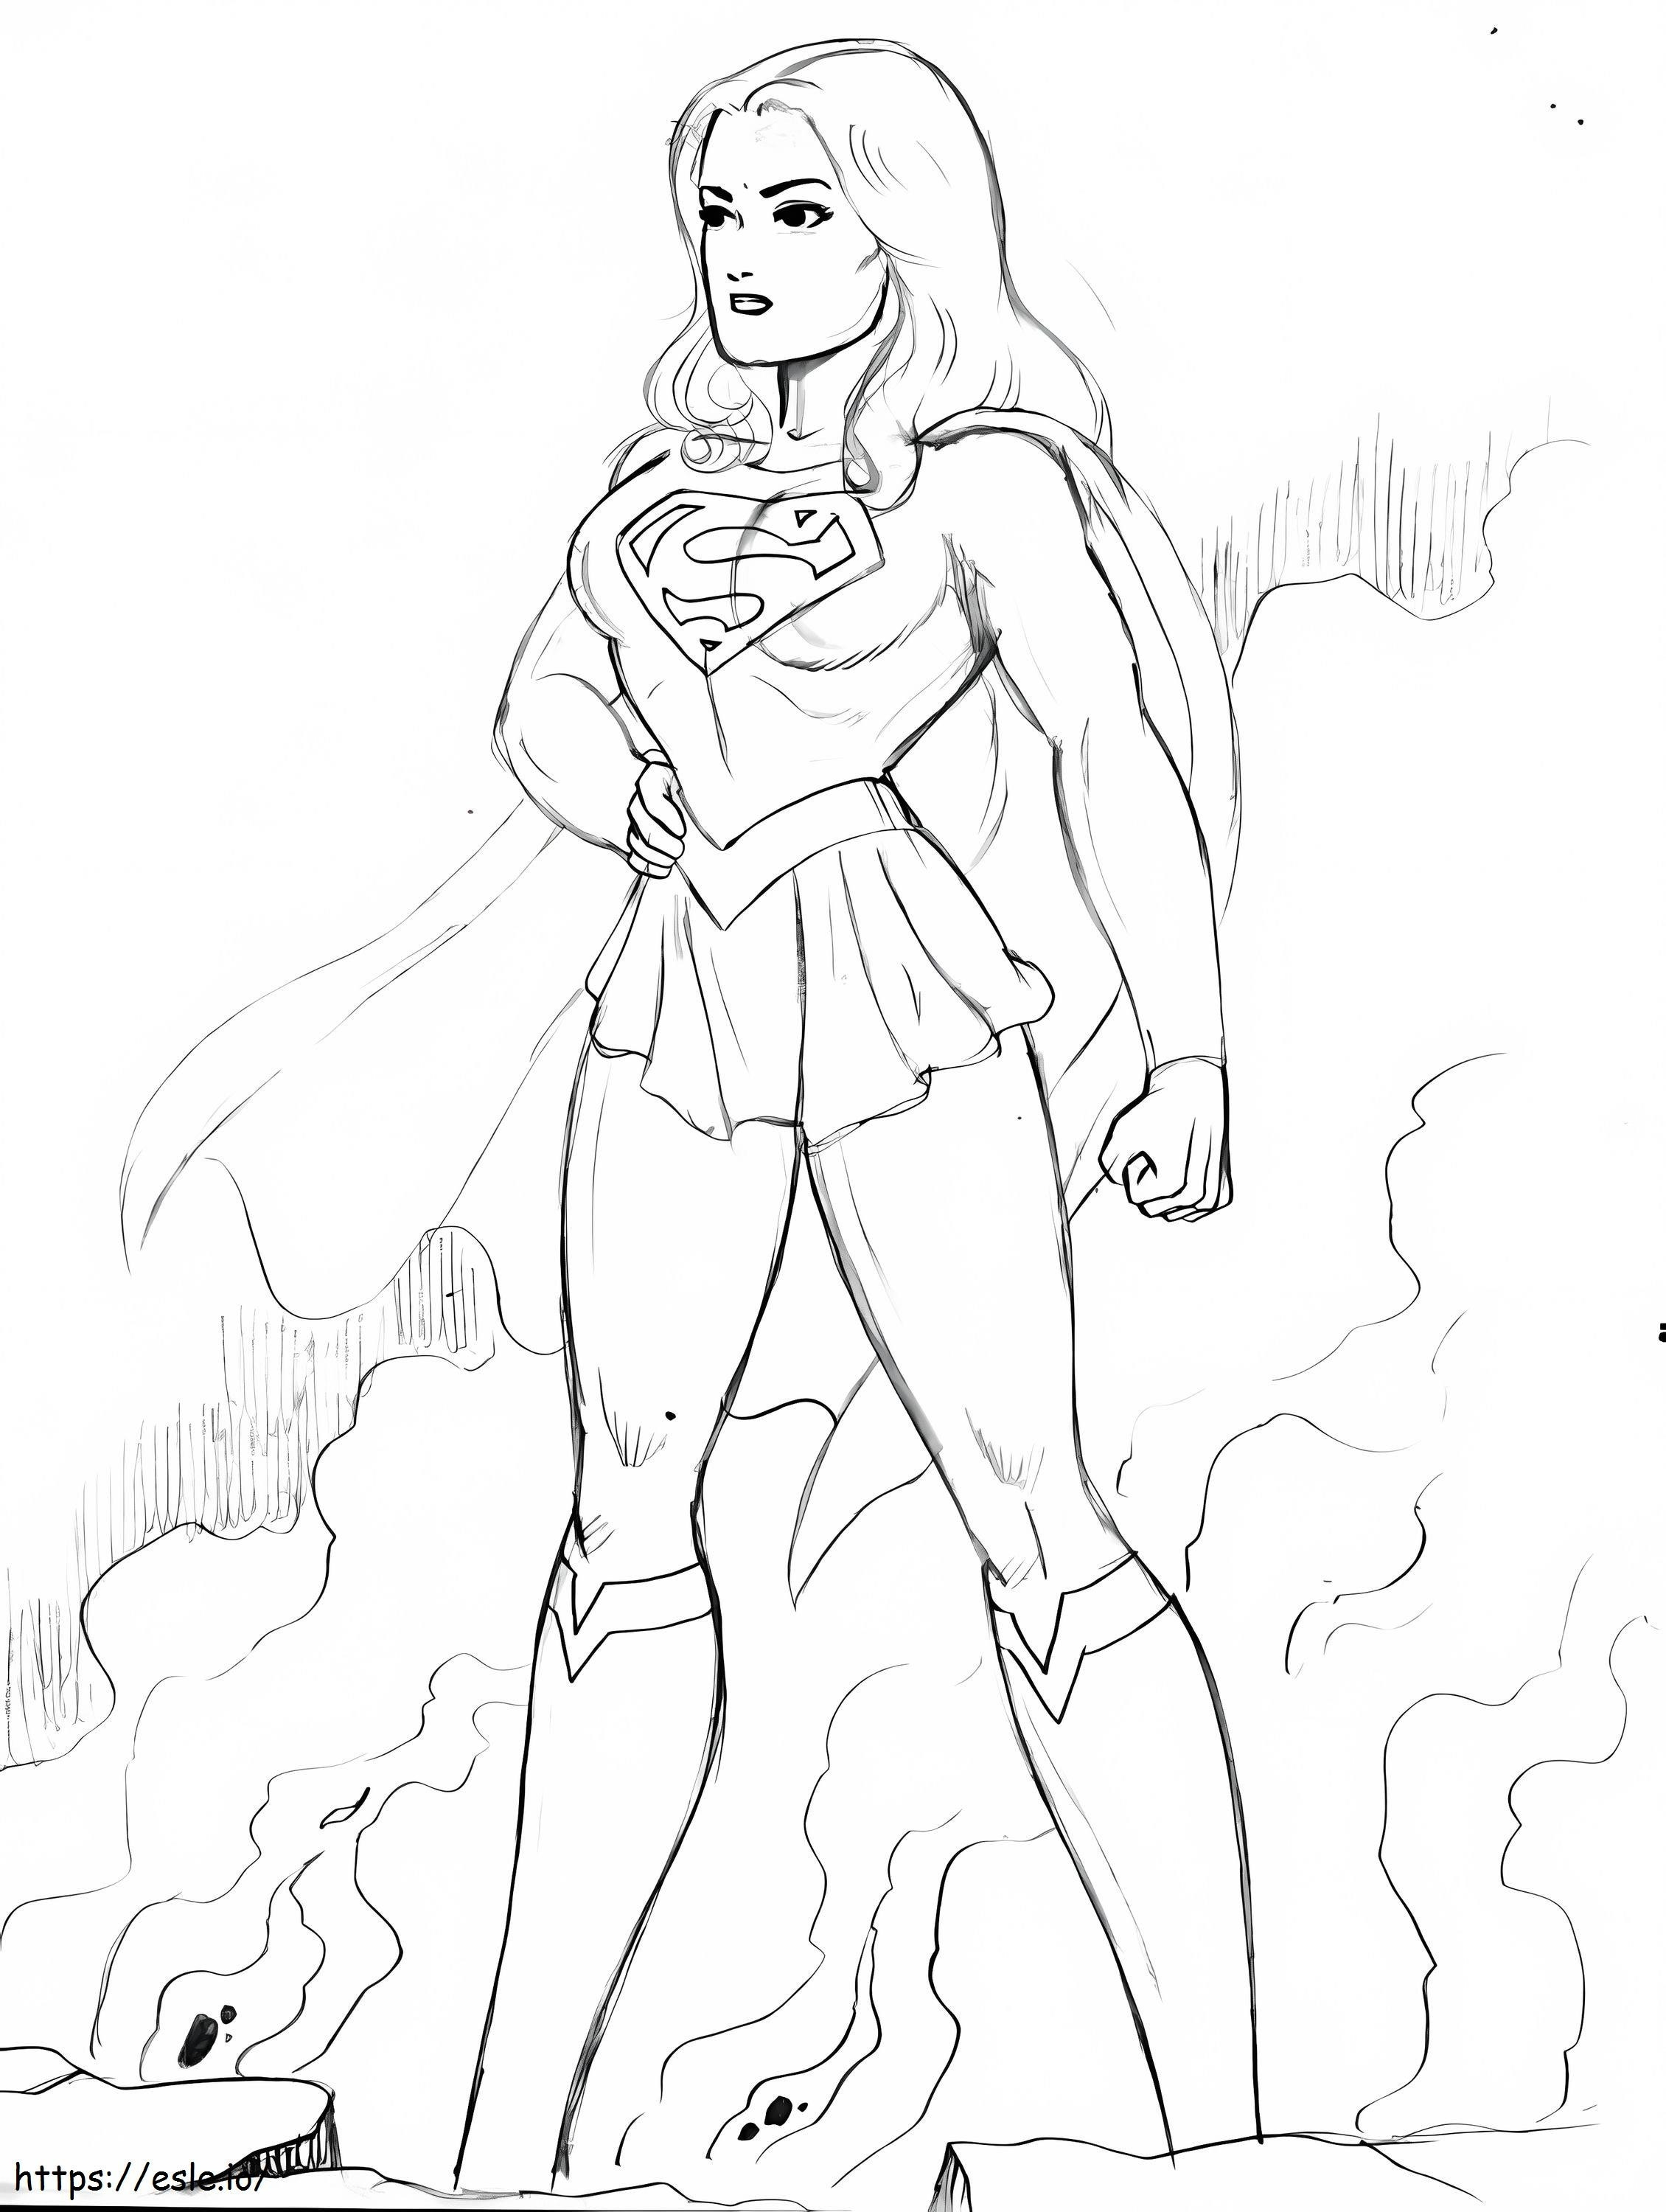 Supergirl 1 ausmalbilder